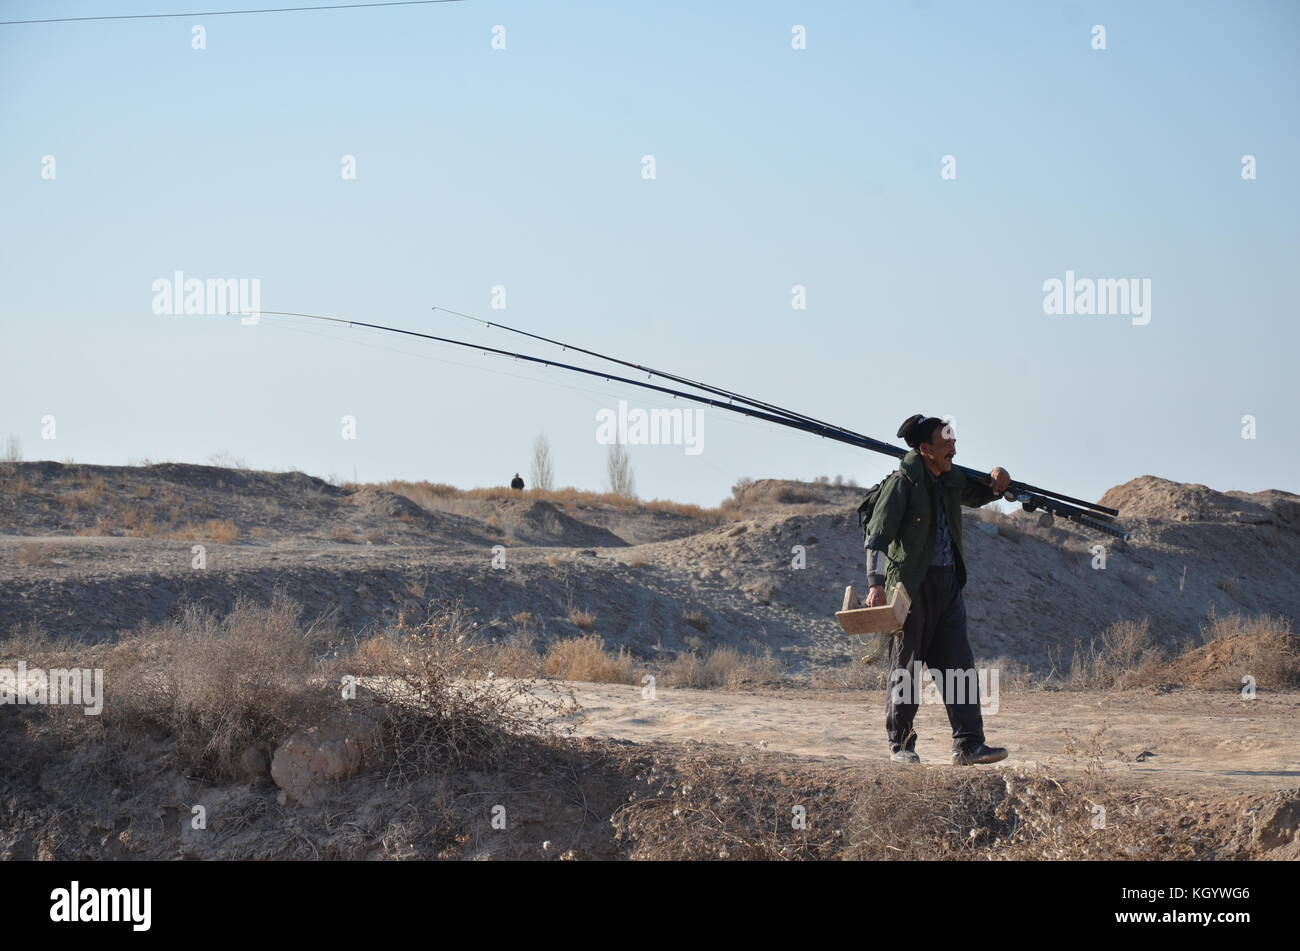 Uzbeki hombre con caña de pescar y taburete pequeño caminar en el desierto en Uzbekistán. Foto de stock